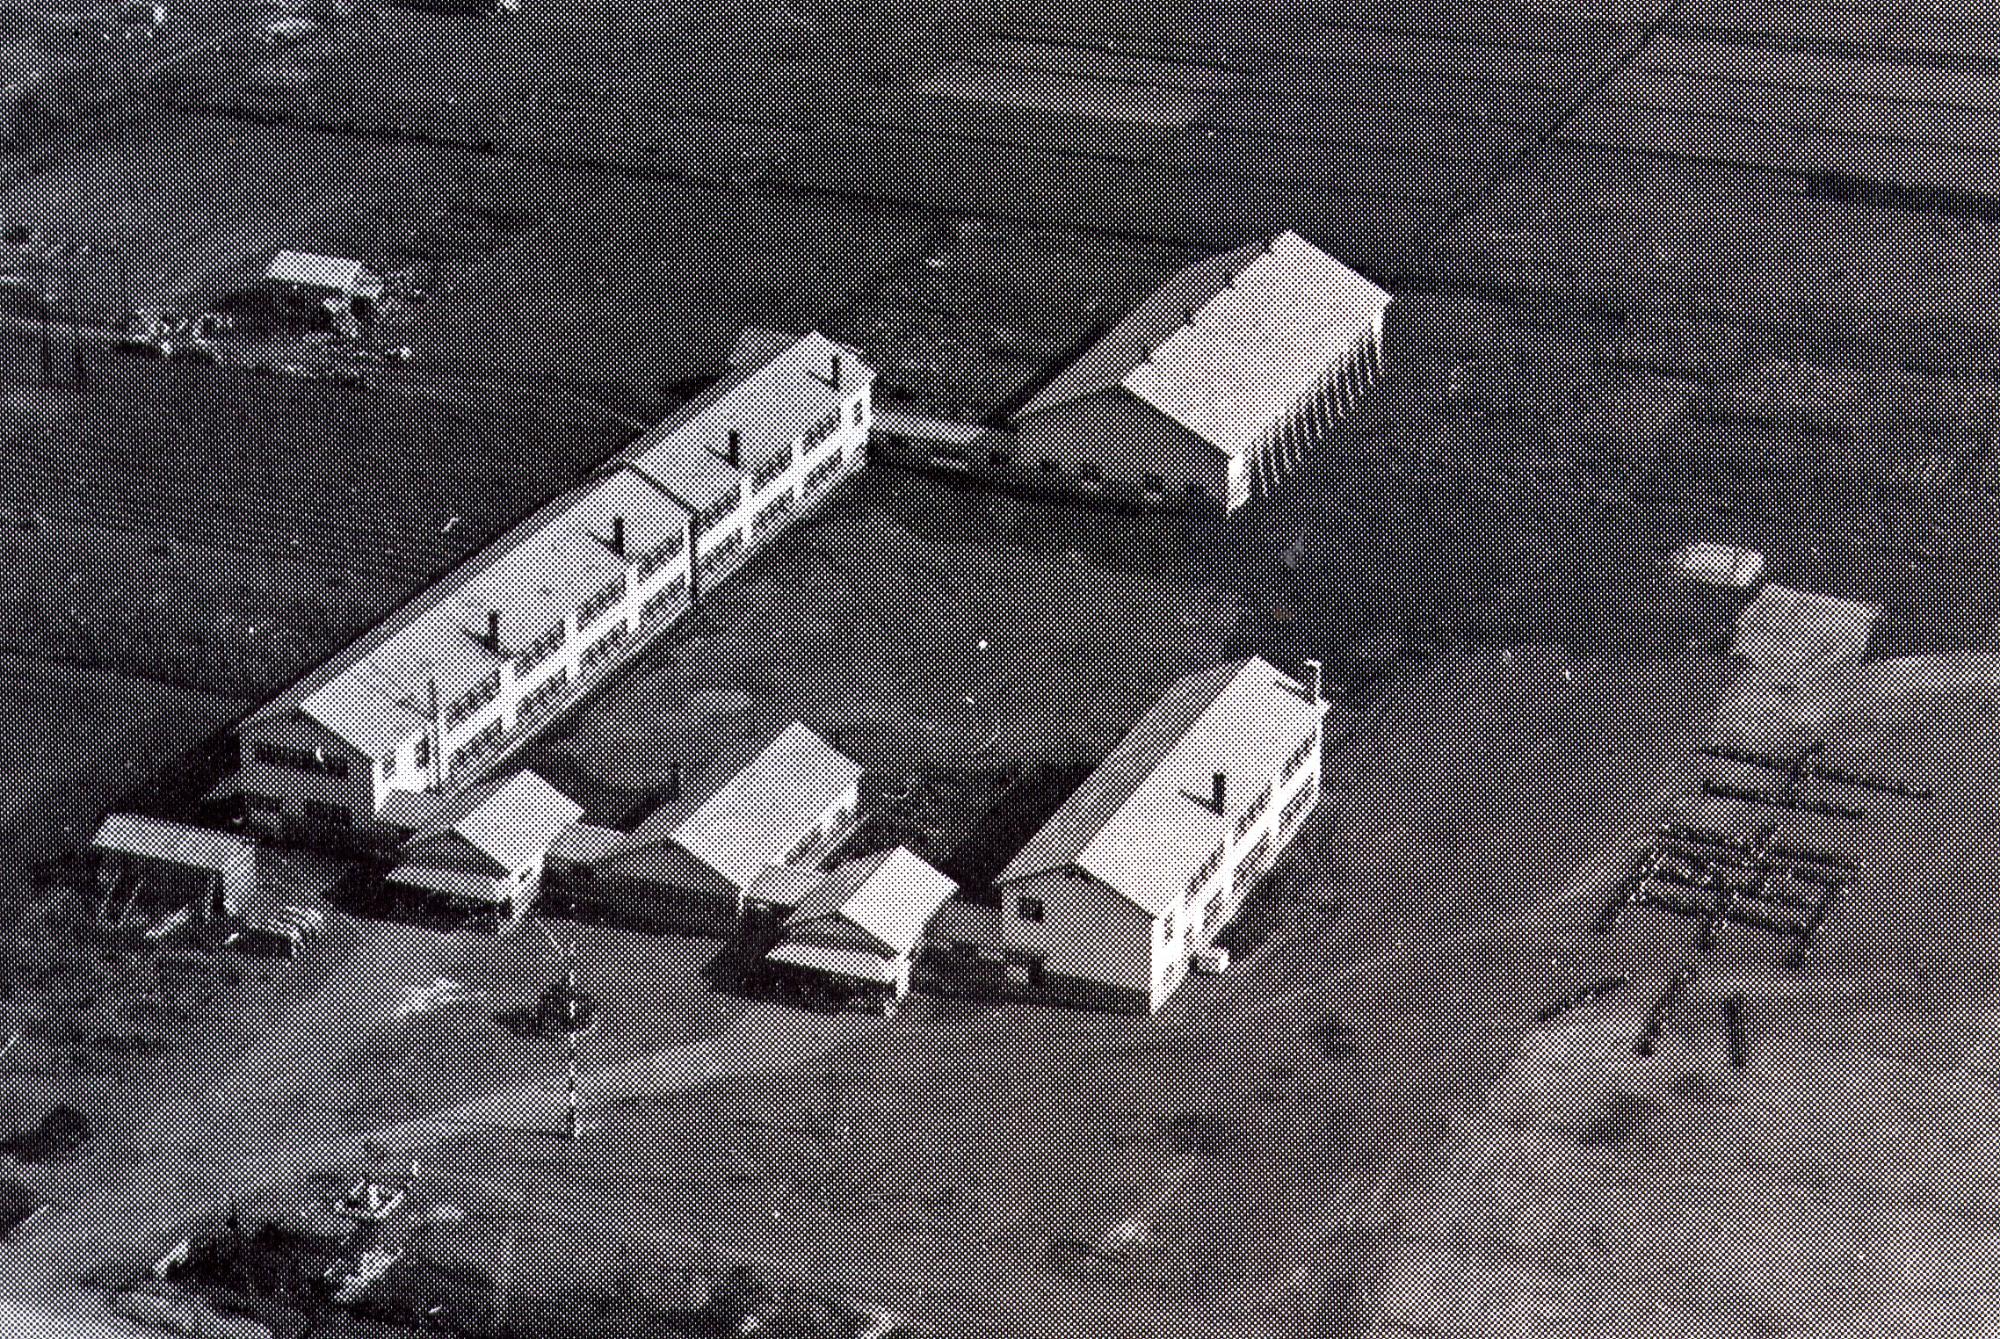 渡り廊下で繋がっている6棟の校舎の右側の校庭に人文字で「士南小」と書かれた昭和30年代の士別南小学校を上空から撮影した白黒写真